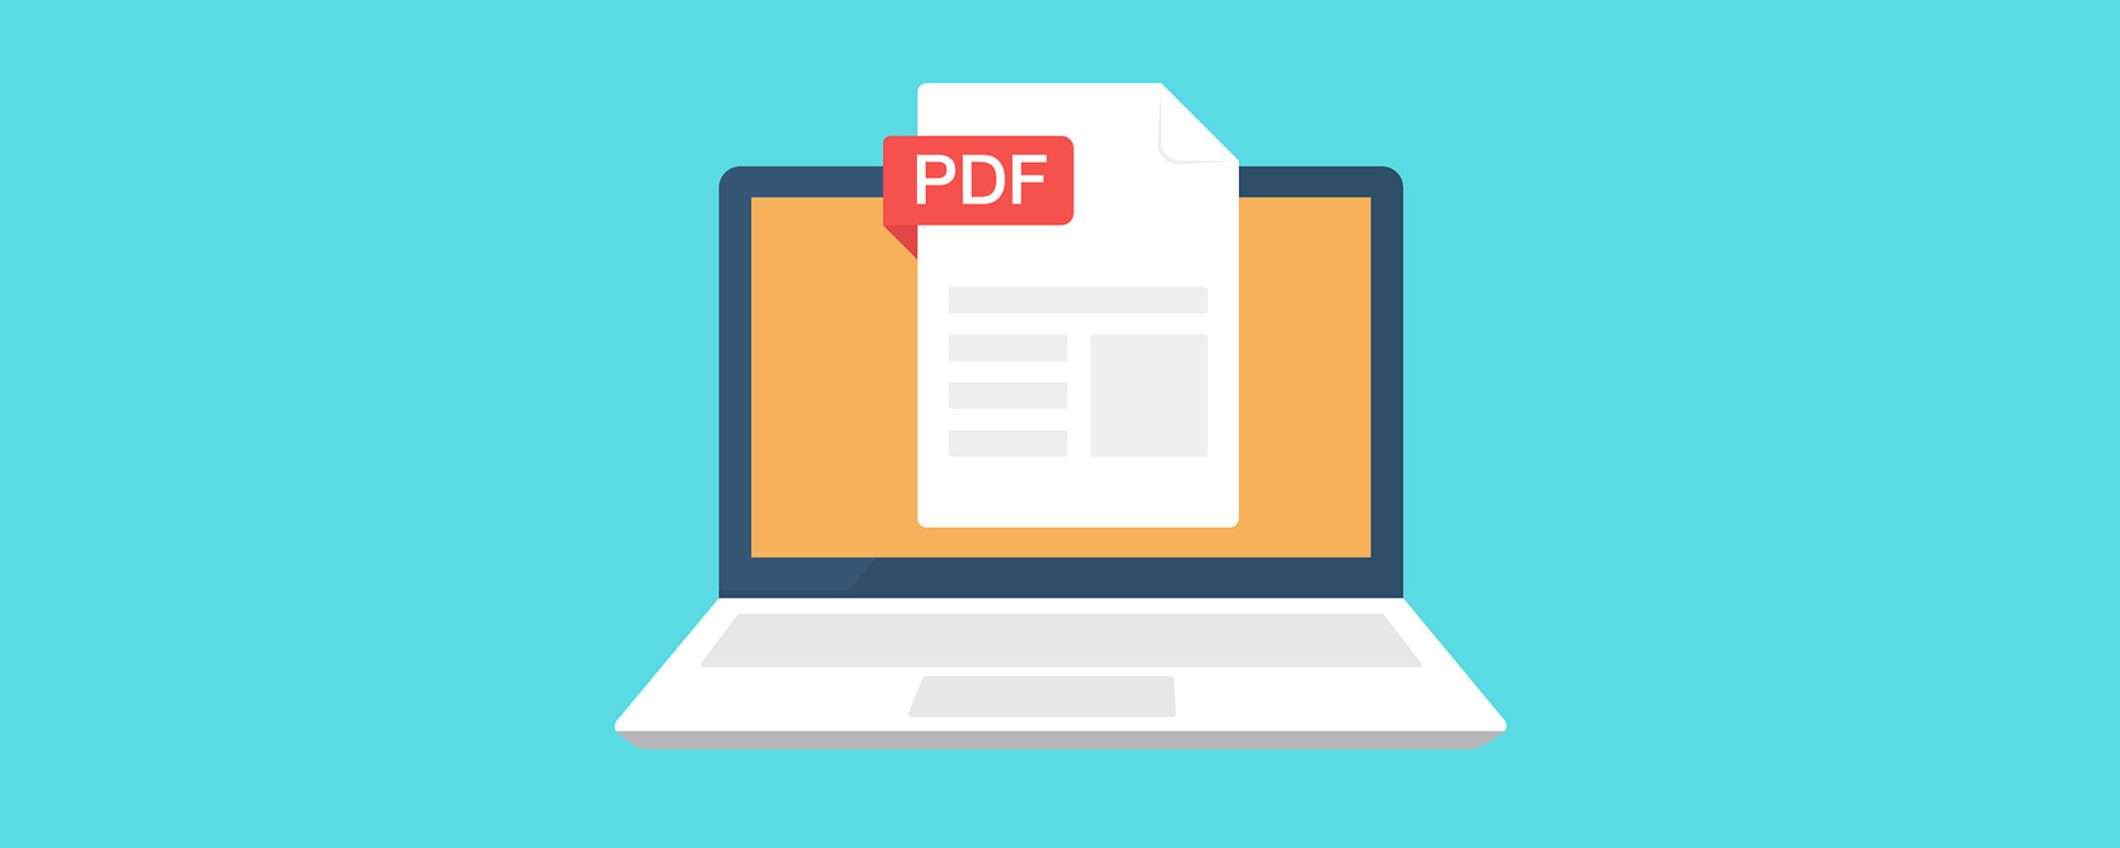 Converti, modifica e firma i tuoi PDF in un clic con Soda PDF al 62% di sconto